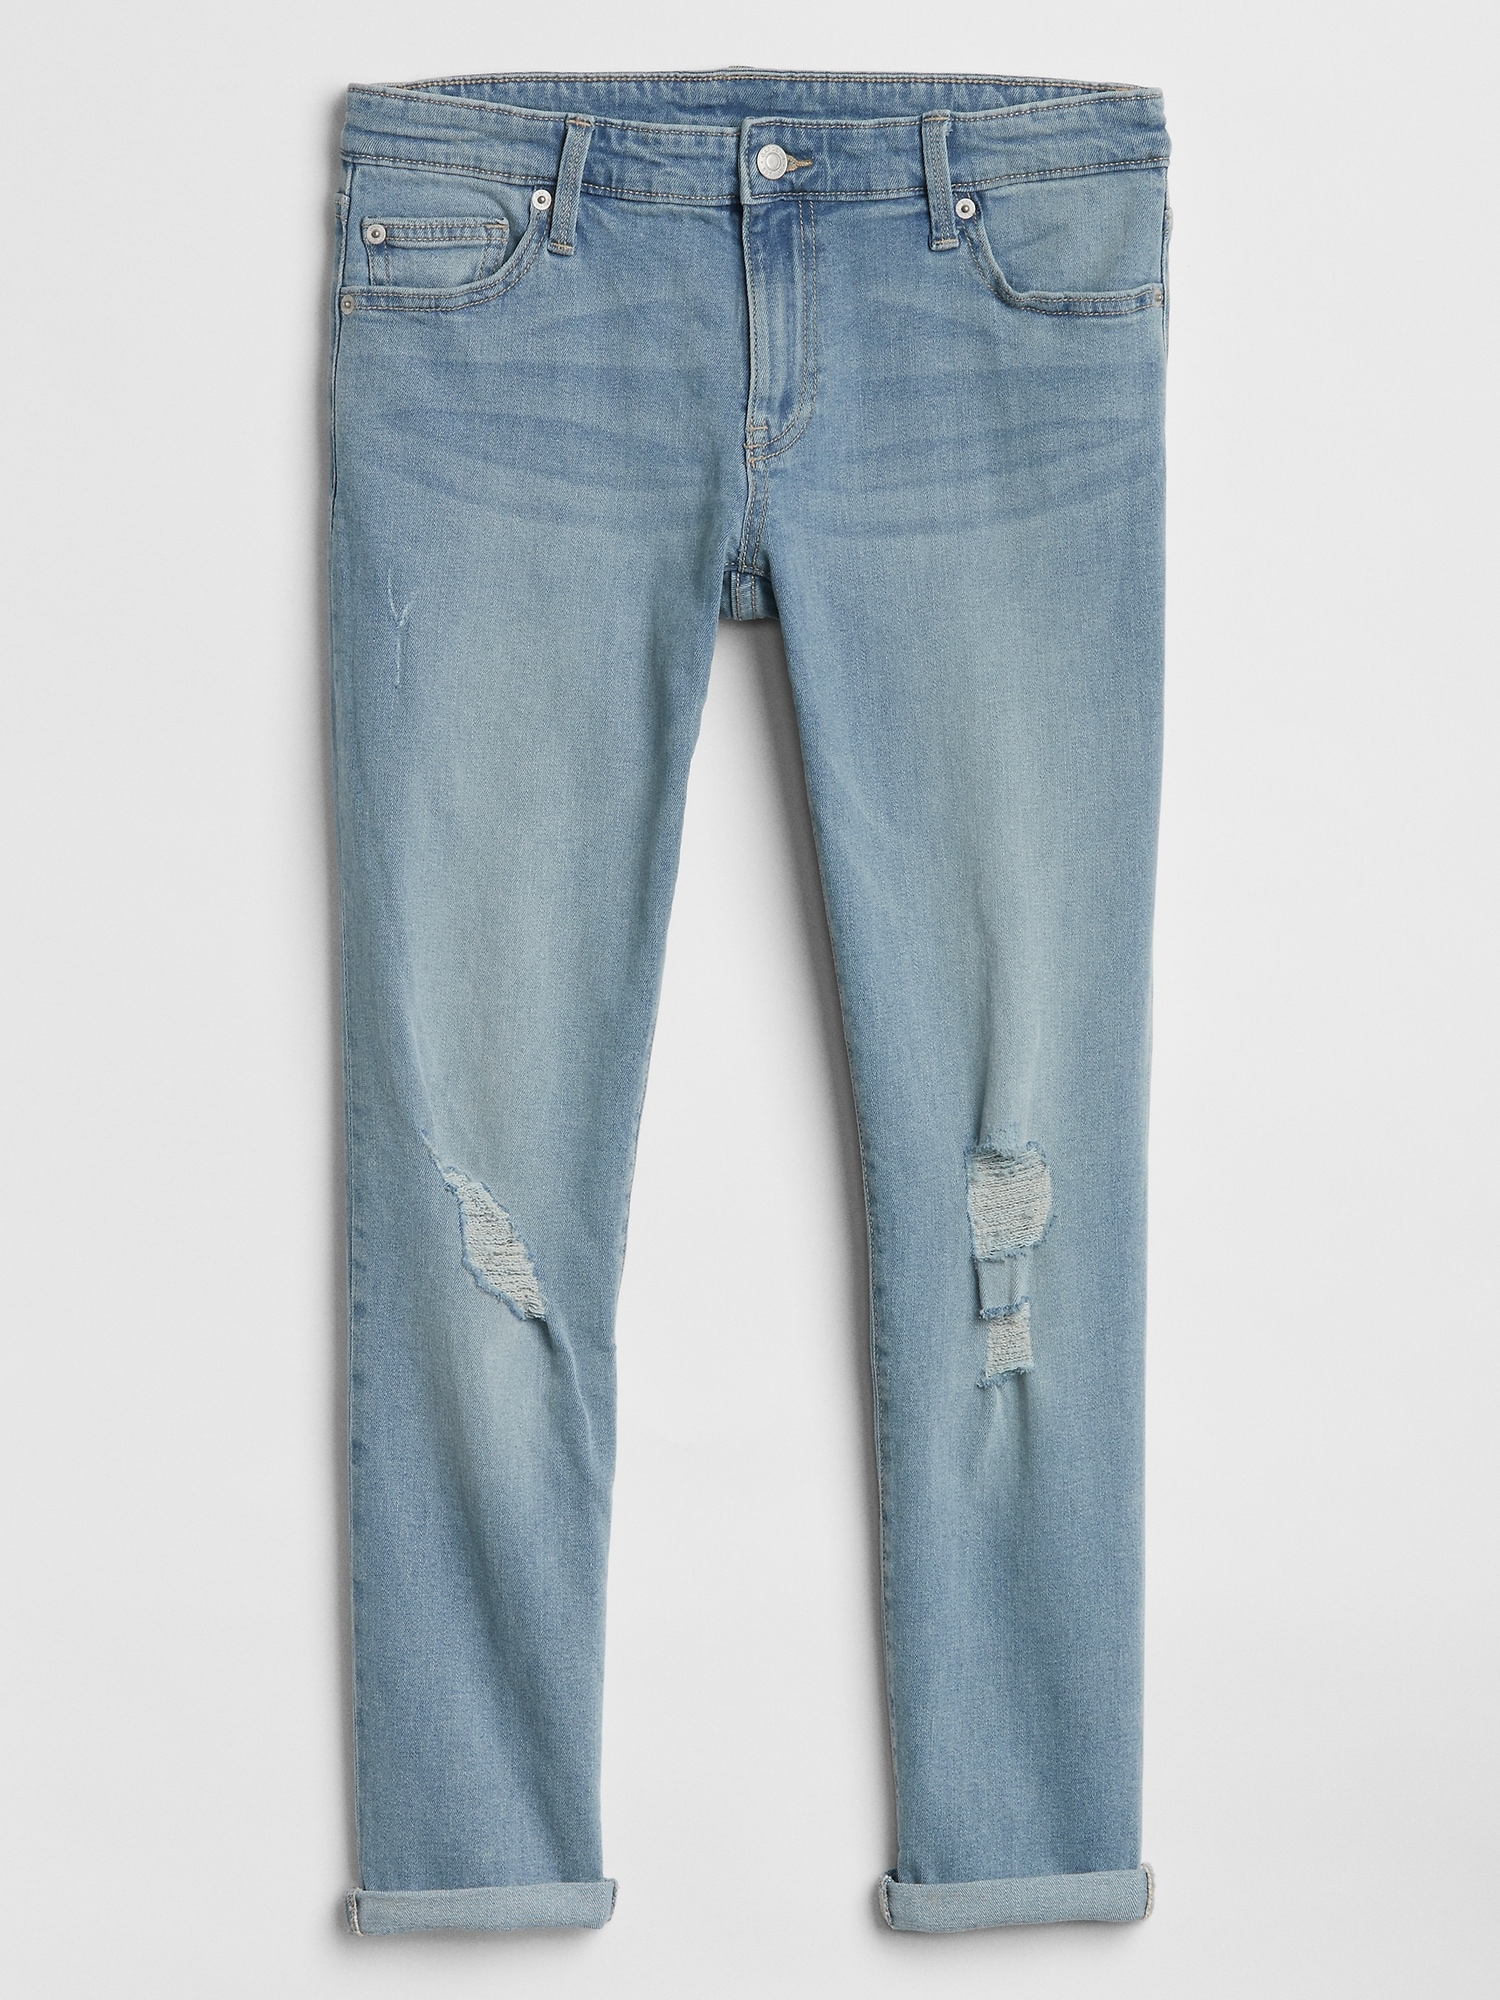 gap factory girlfriend jeans